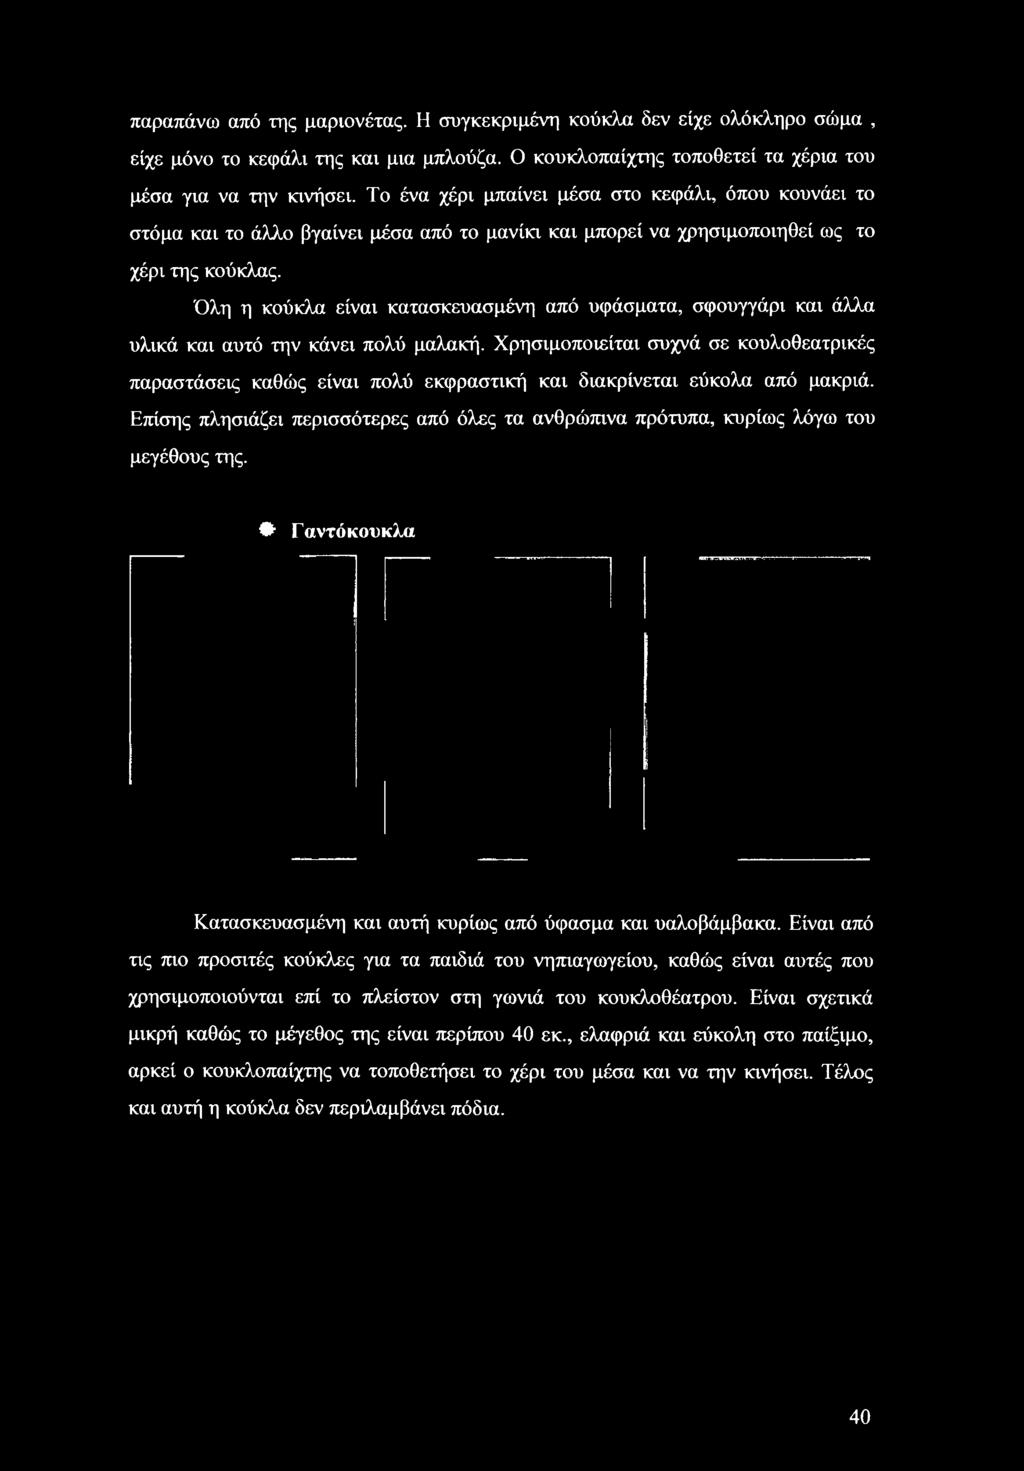 ΠΤΥΧΙΑΚΗ ΕΡΓΑΣΙΑ. Φοιτήτρια: Μαυρουδή Ιωάννα Φωτεινή Ecaunvo: 8 Α. Μ - PDF  Free Download